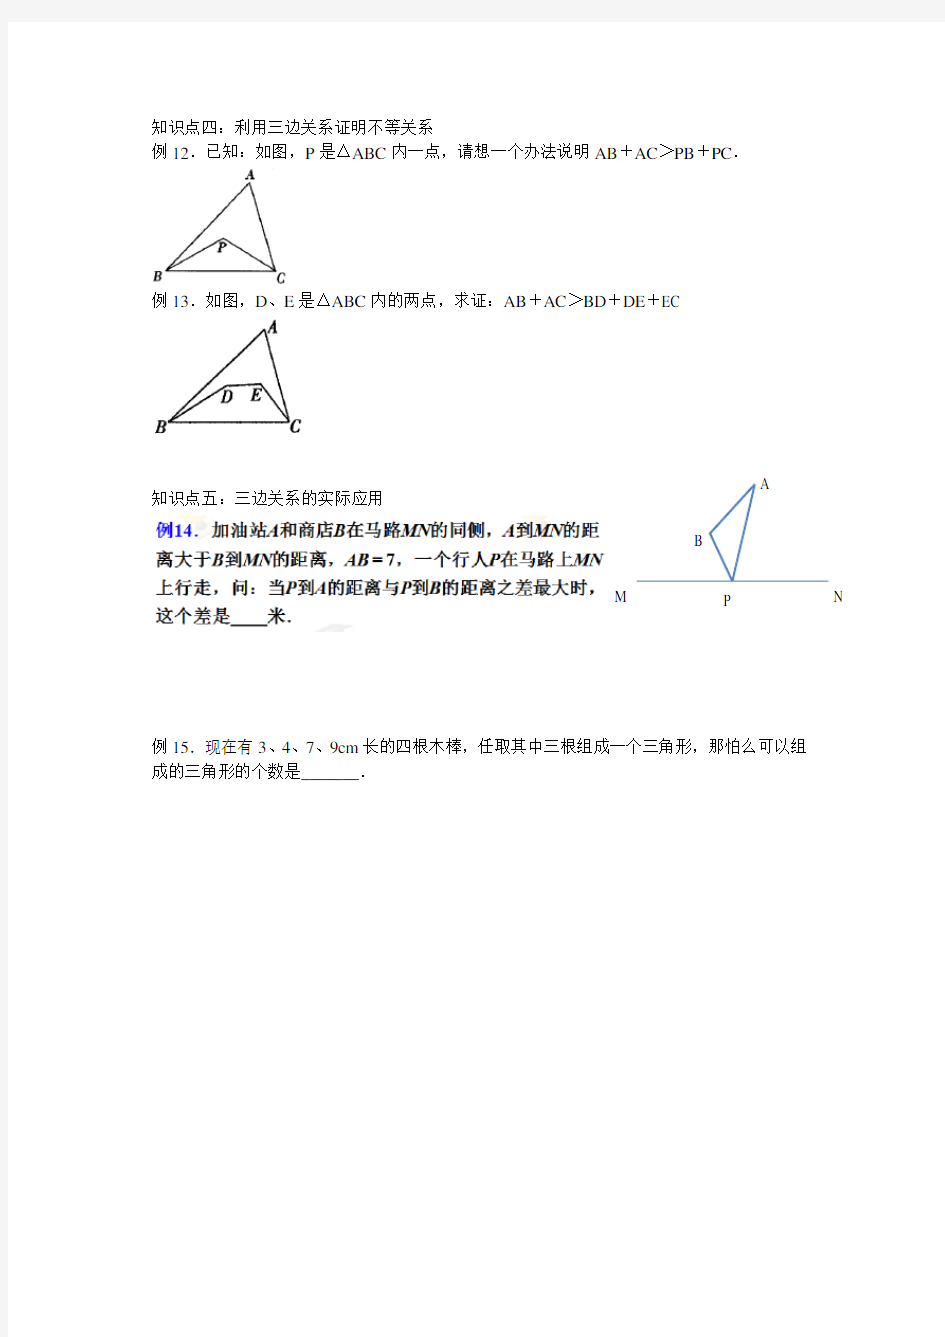 三角形三边关系的典型应用